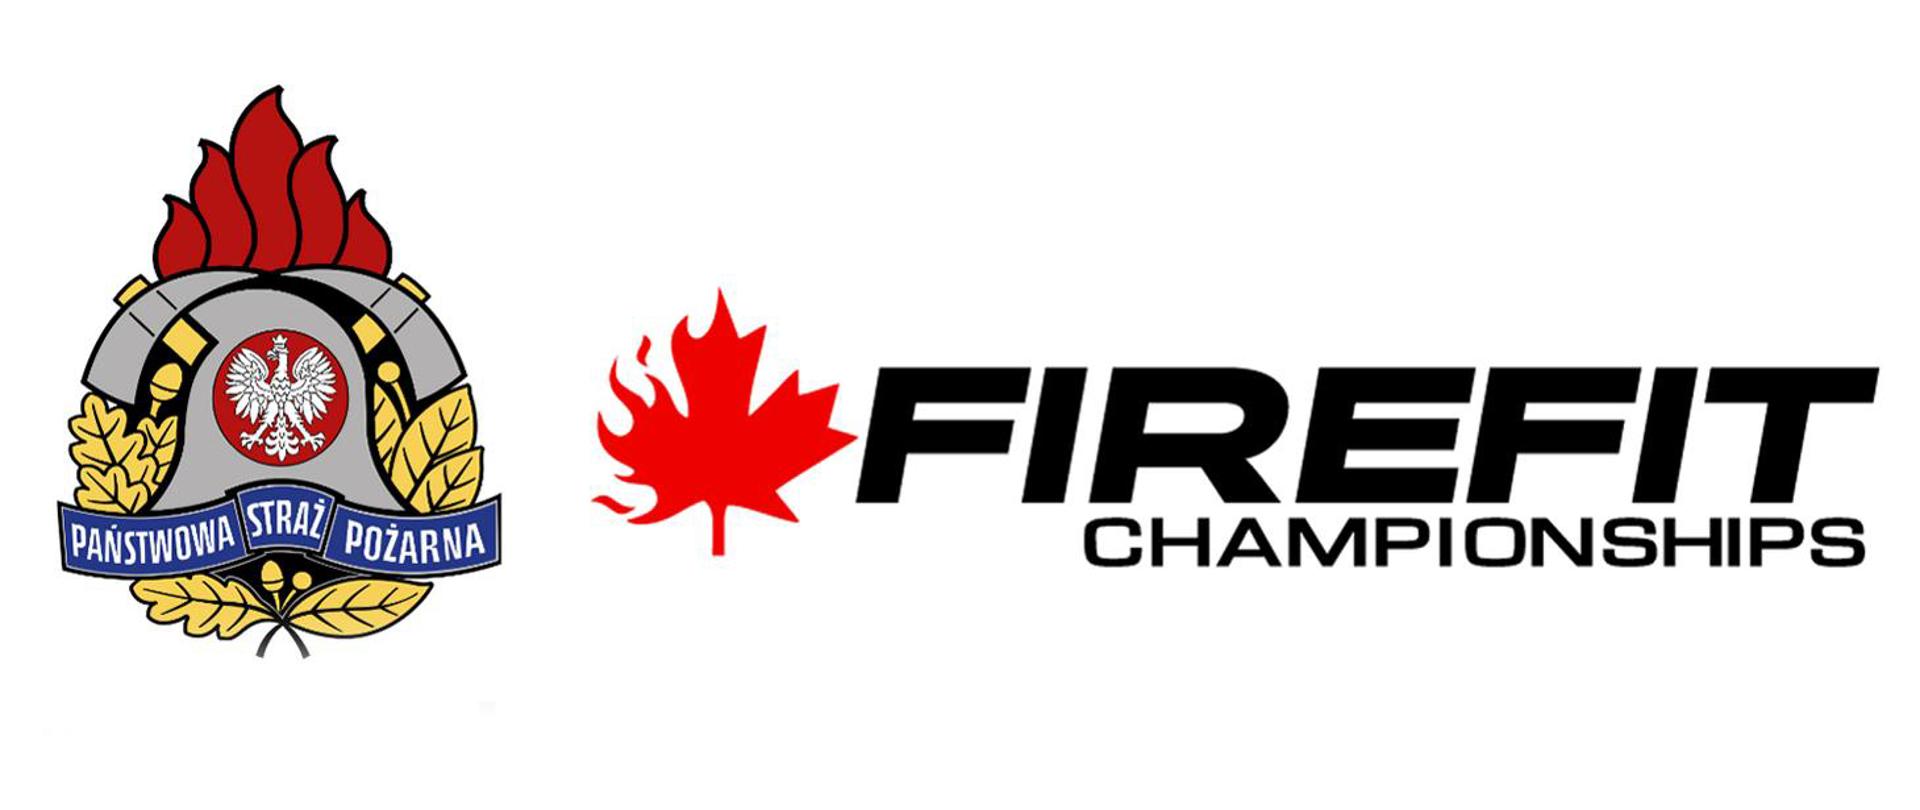 Logotyp PSP i FireFit